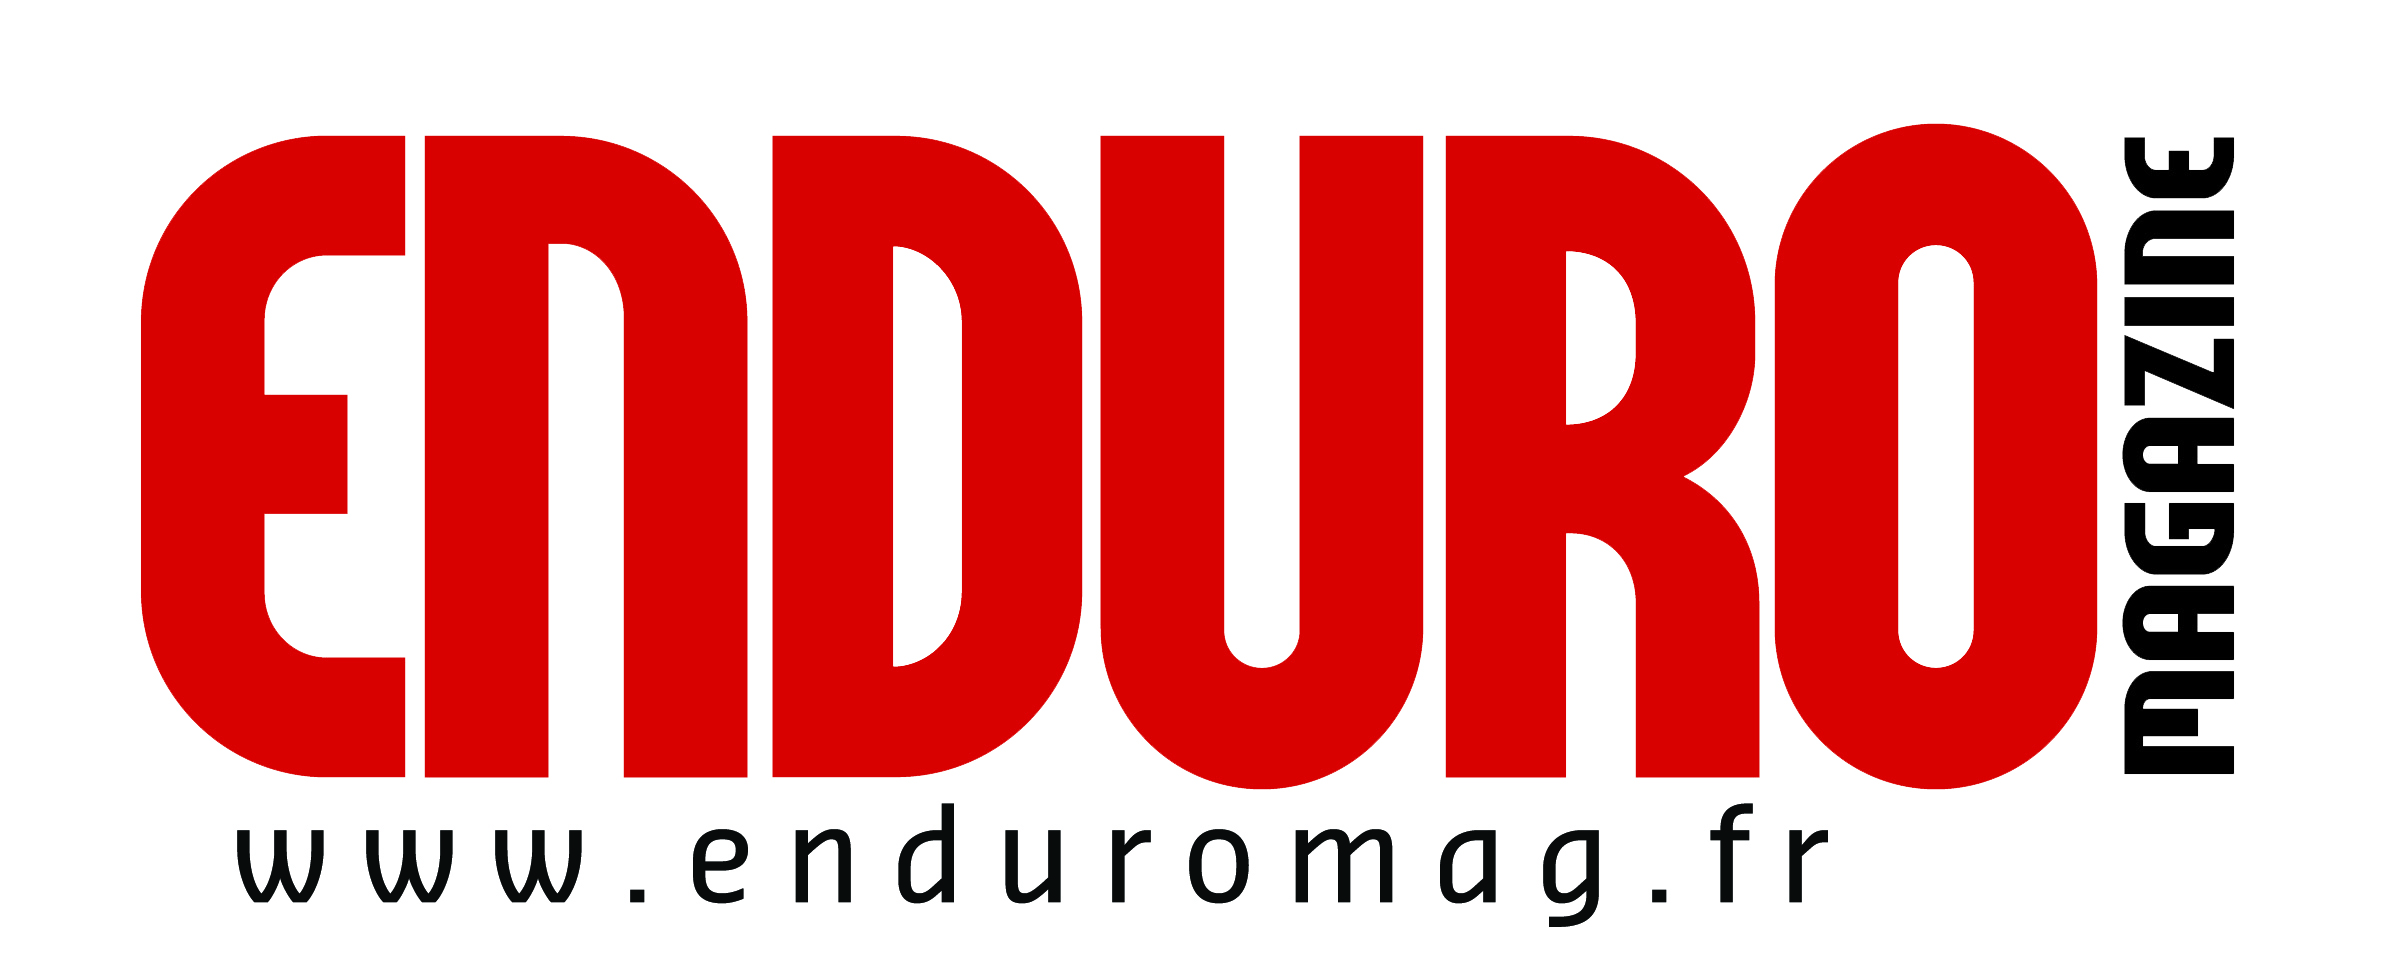 logo_enduromag.jpg